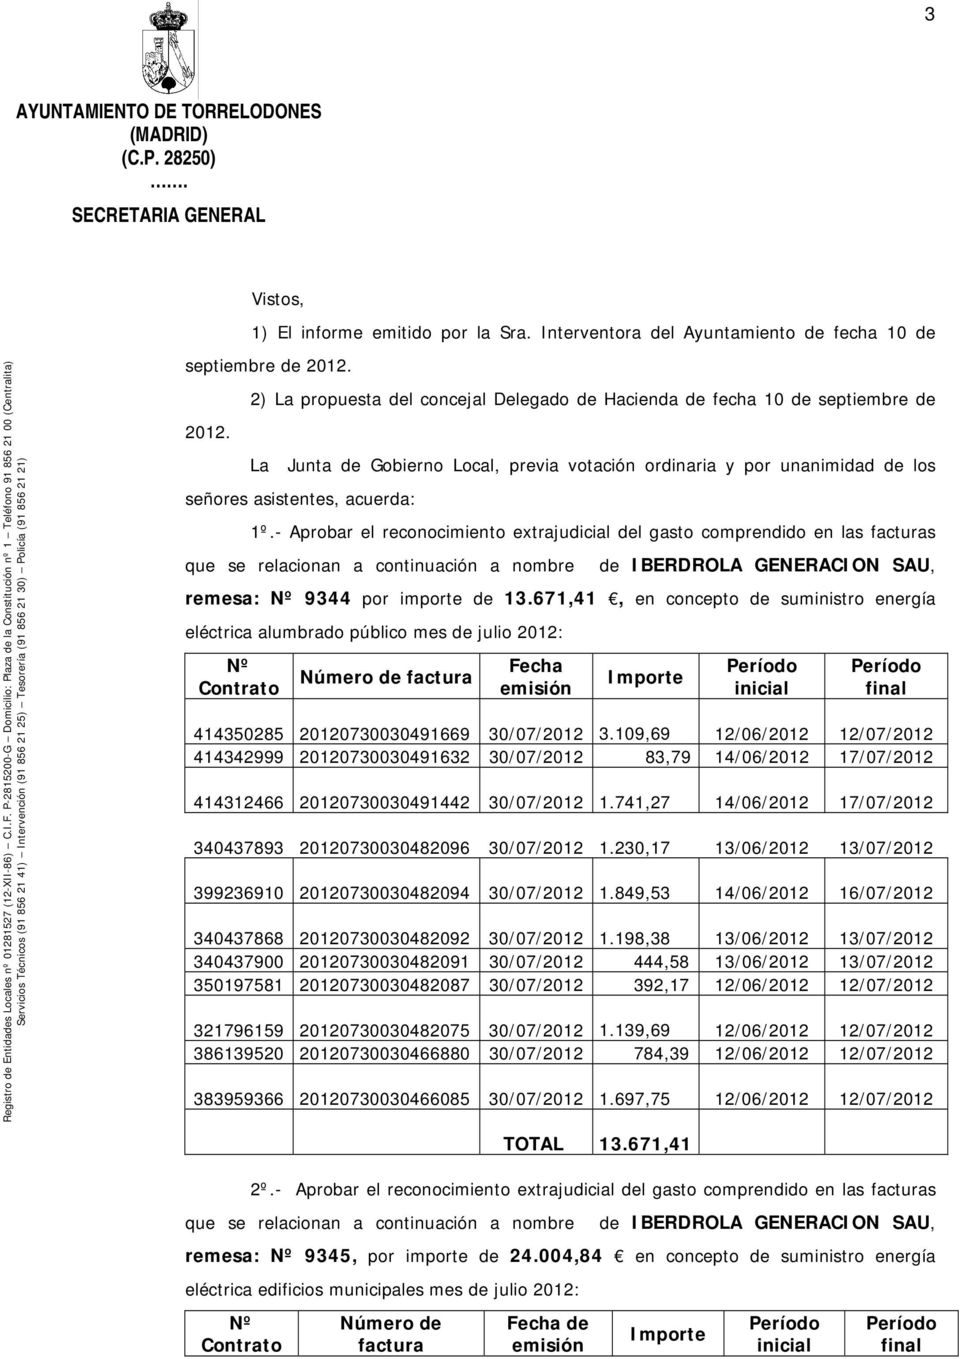 - Aprobar el reconocimiento extrajudicial del gasto comprendido en las facturas que se relacionan a continuación a nombre de IBERDROLA GENERACION SAU, remesa: Nº 9344 por importe de 13.